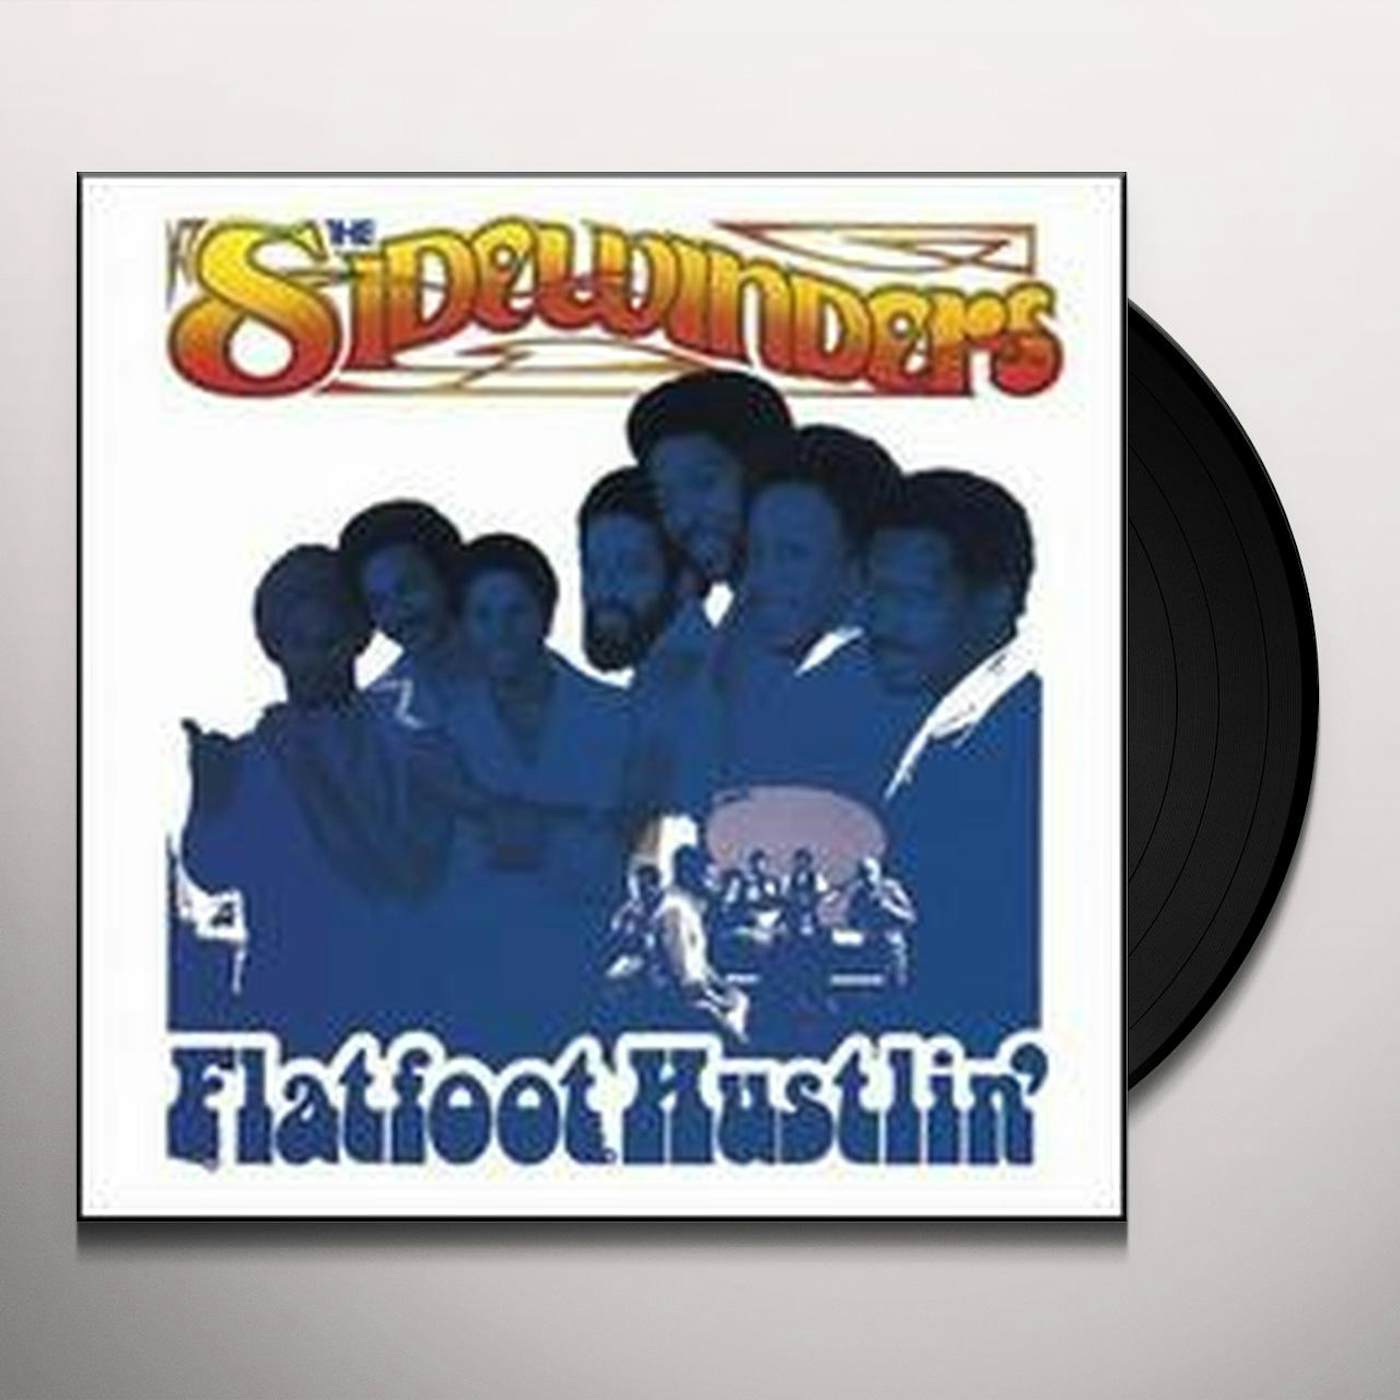 Sidewinders FLATFOOT HUSTLIN' (FRA) (Vinyl)